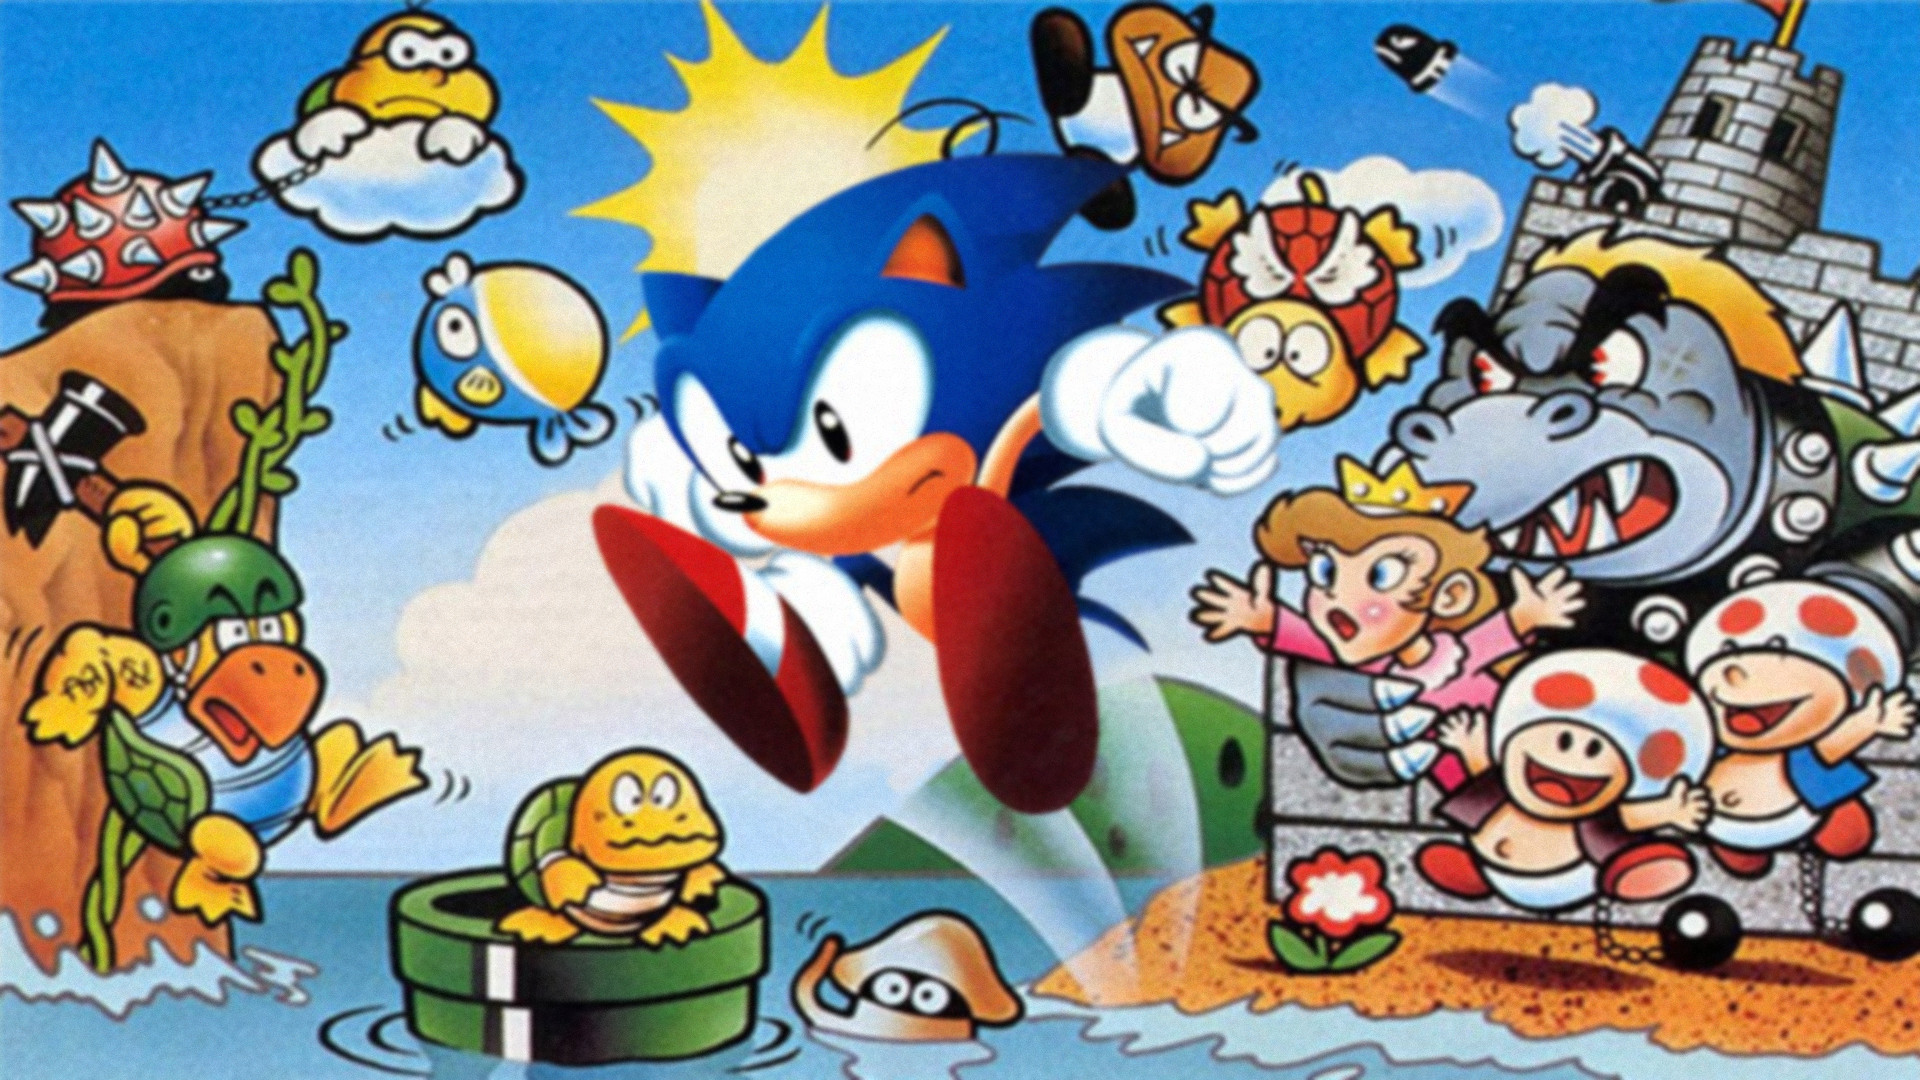 Sonic the Hedgehog in Super Mario Bros.